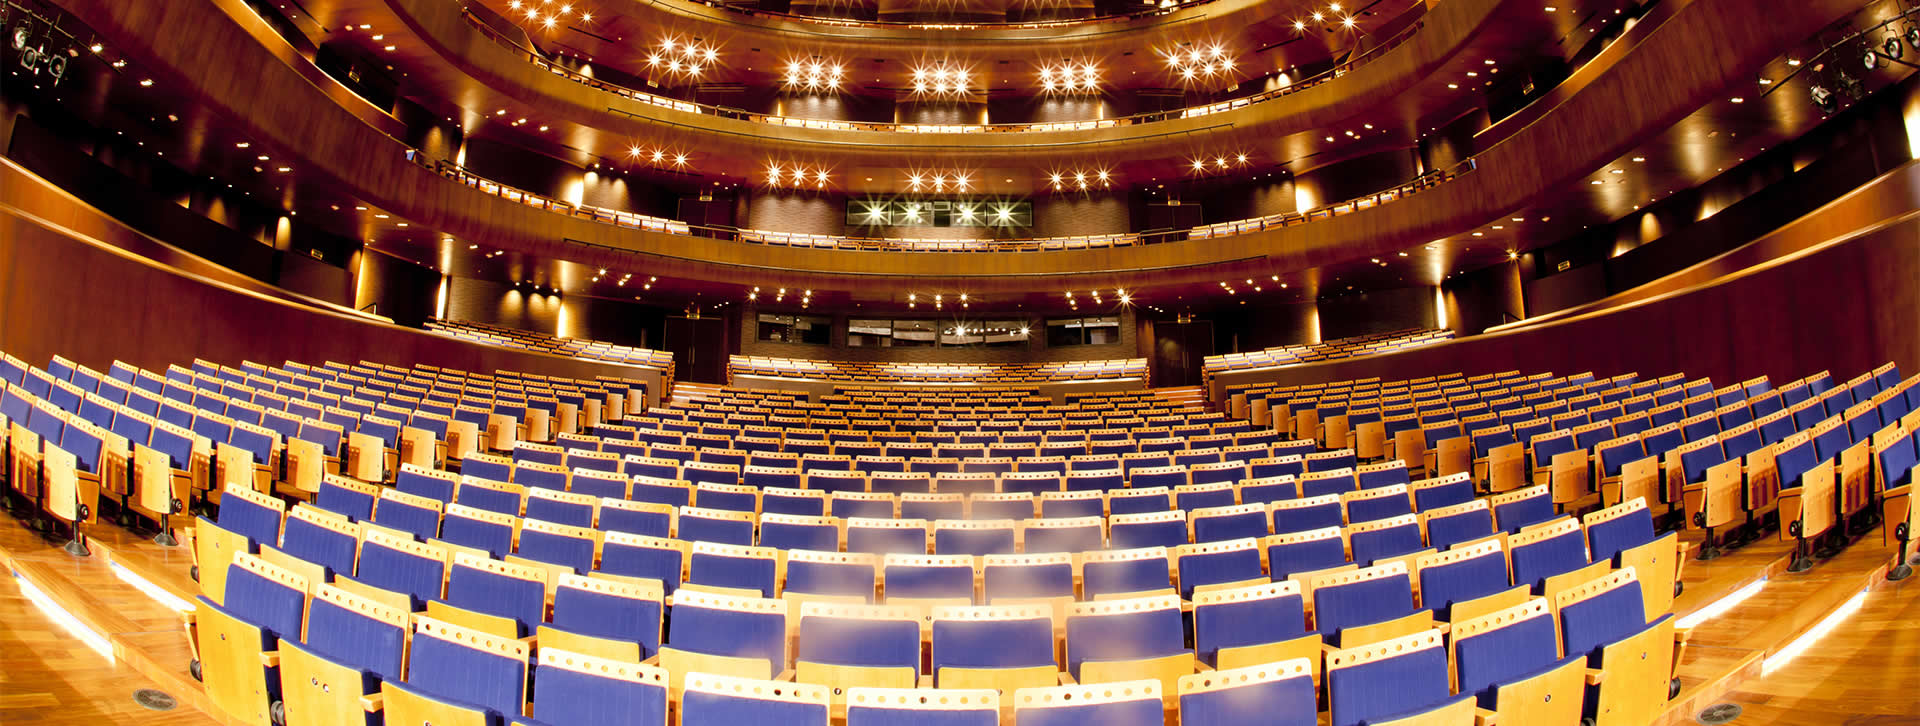 Morelco: Gran Teatro Nacional del Perú en San Borja, Lima, Perú